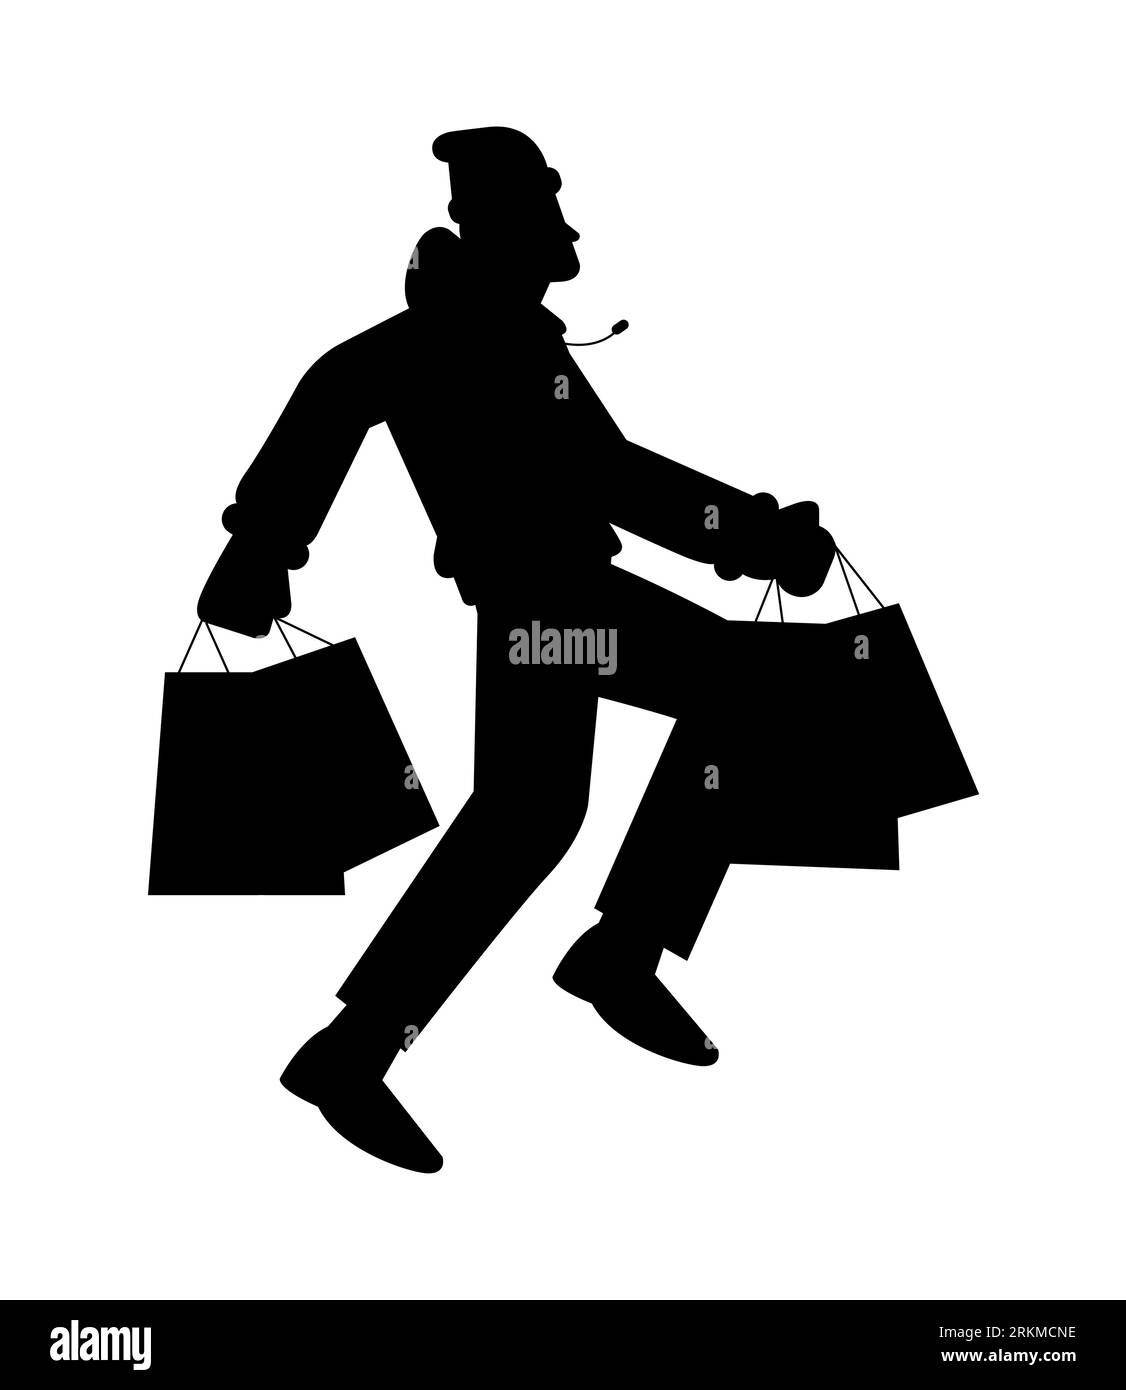 Ganzkörperfoto eines jungen Mannes, der Einkaufstaschen hält, schwarze Silhouette eines Mannes, der Einkaufstaschen in den Händen trägt, Vektor isoliert auf weiß Stock Vektor